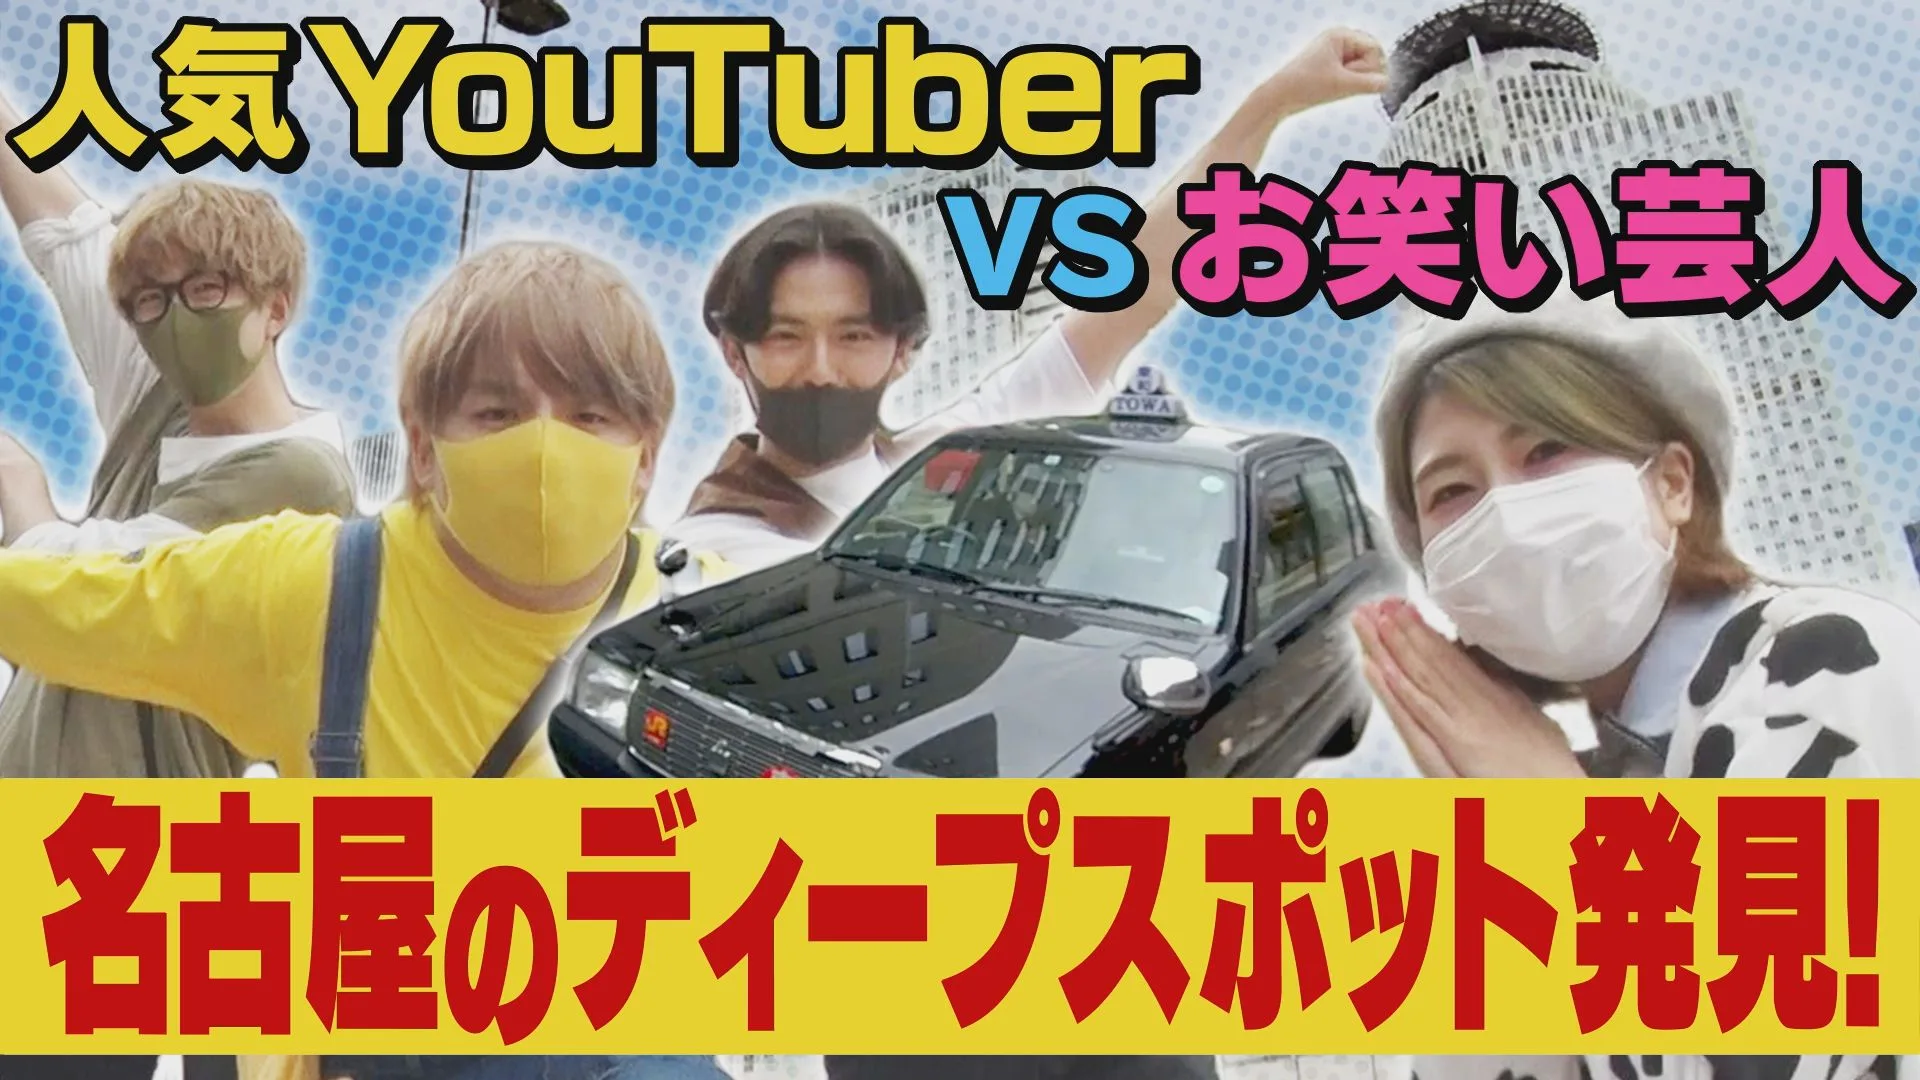 東海テレビ公式 YouTube チャンネル「東海テレビ B 面」すみません、ディープな名古屋観光をしたいのですが